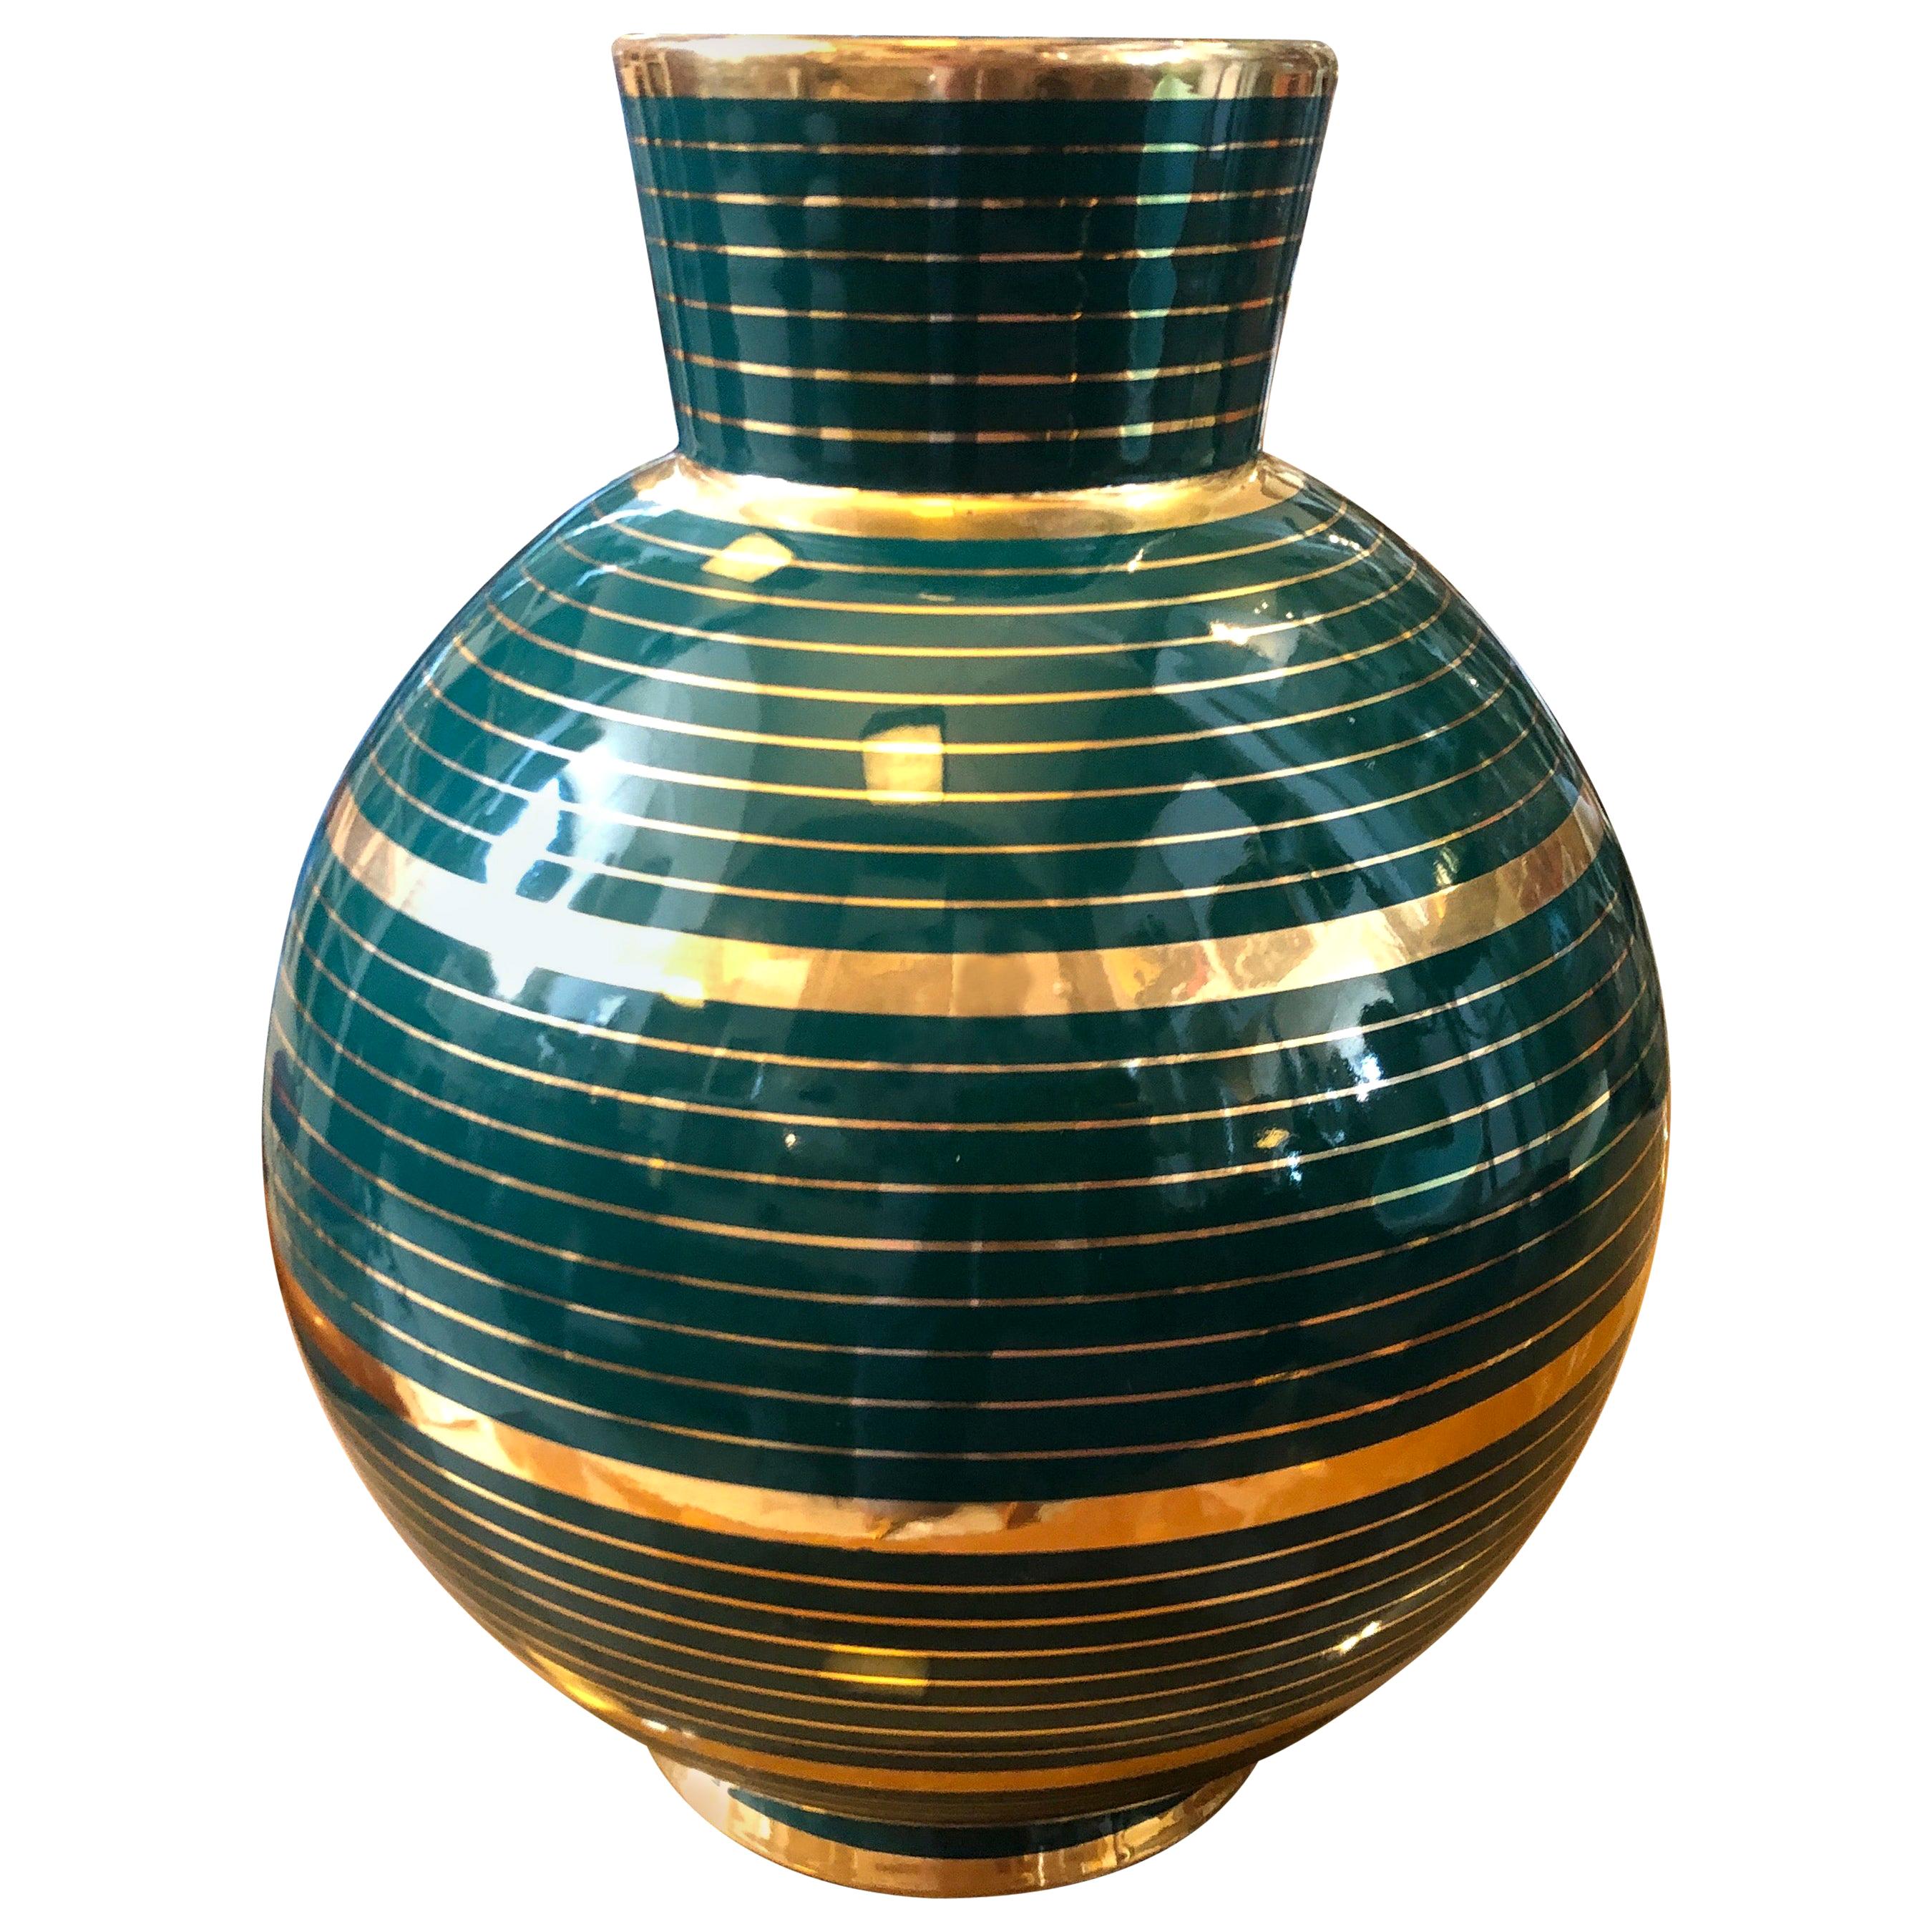 Home Décor Vases Home & Living Vintage Bud Vase Decorative Green Stripe ...